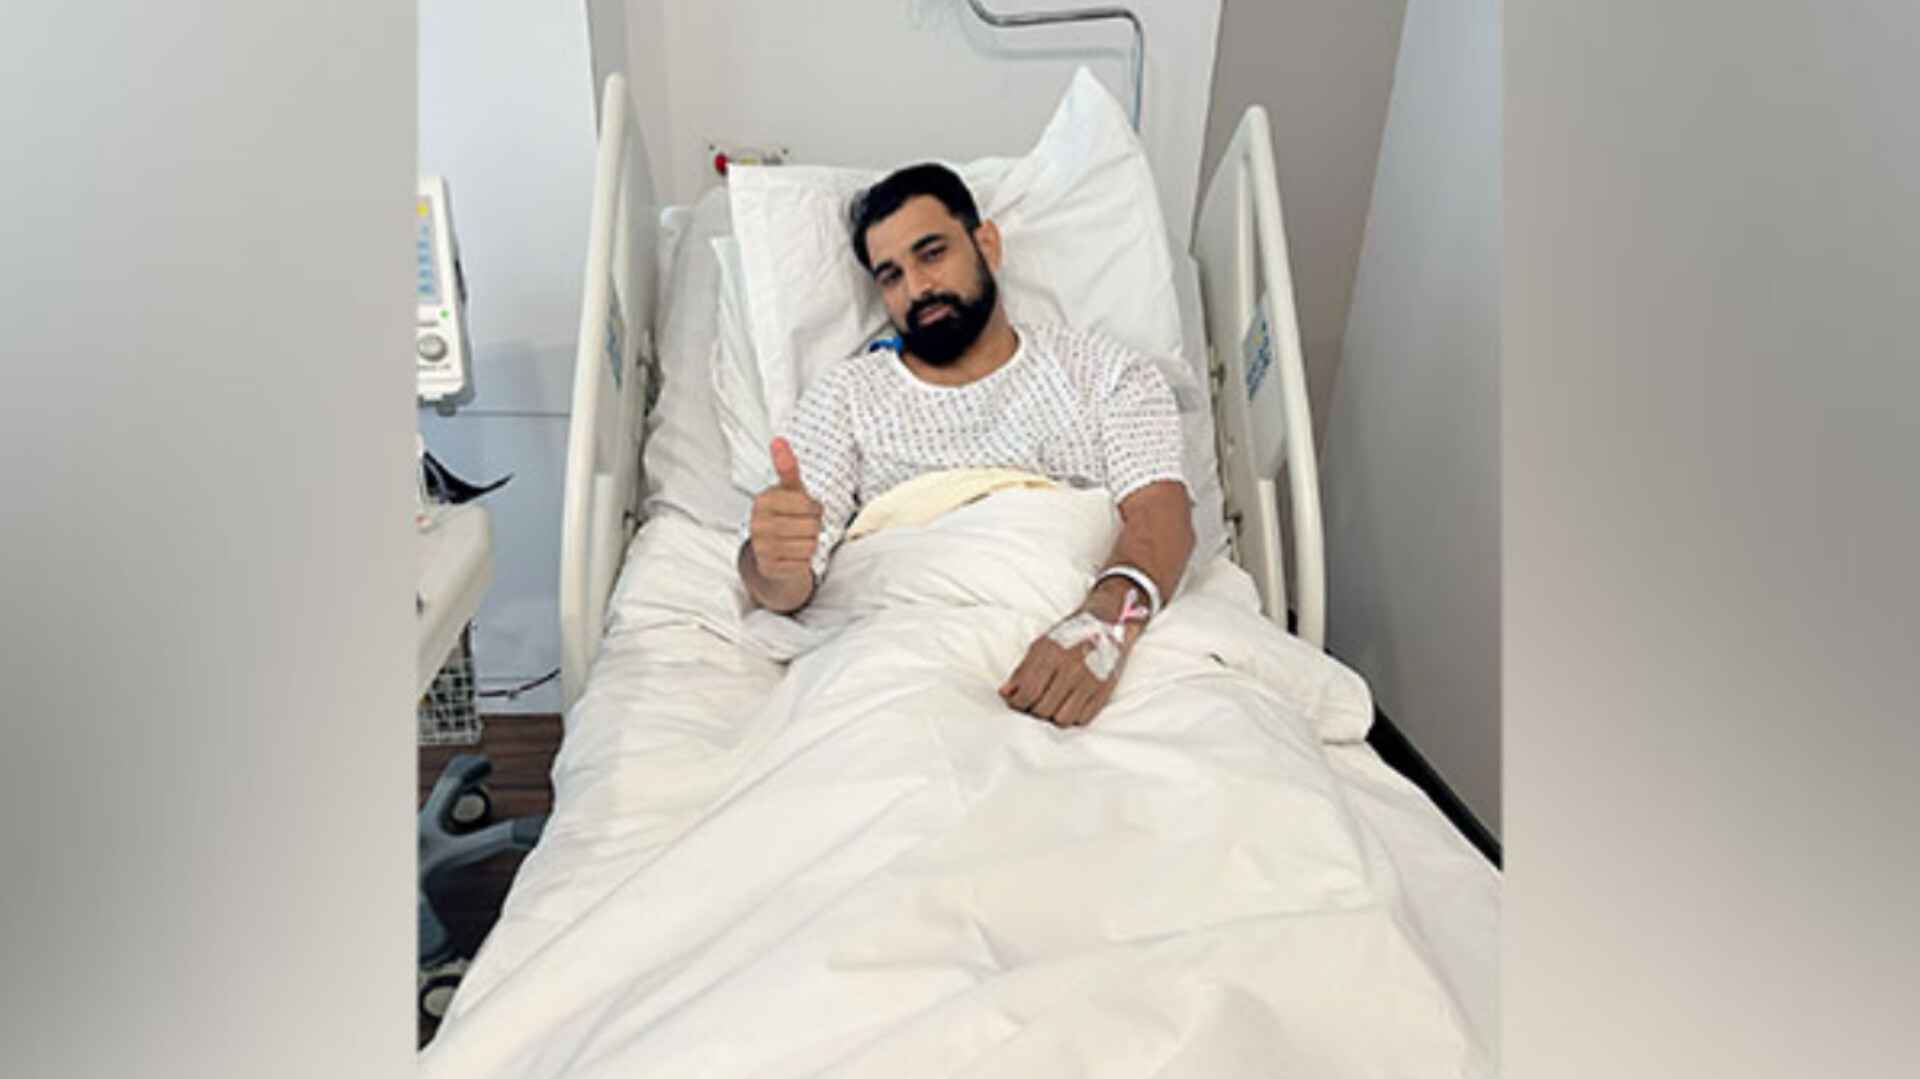 भारत के स्टार तेज गेंदबाज मोहम्मद शमी ने कराई एड़ी की सर्जरी